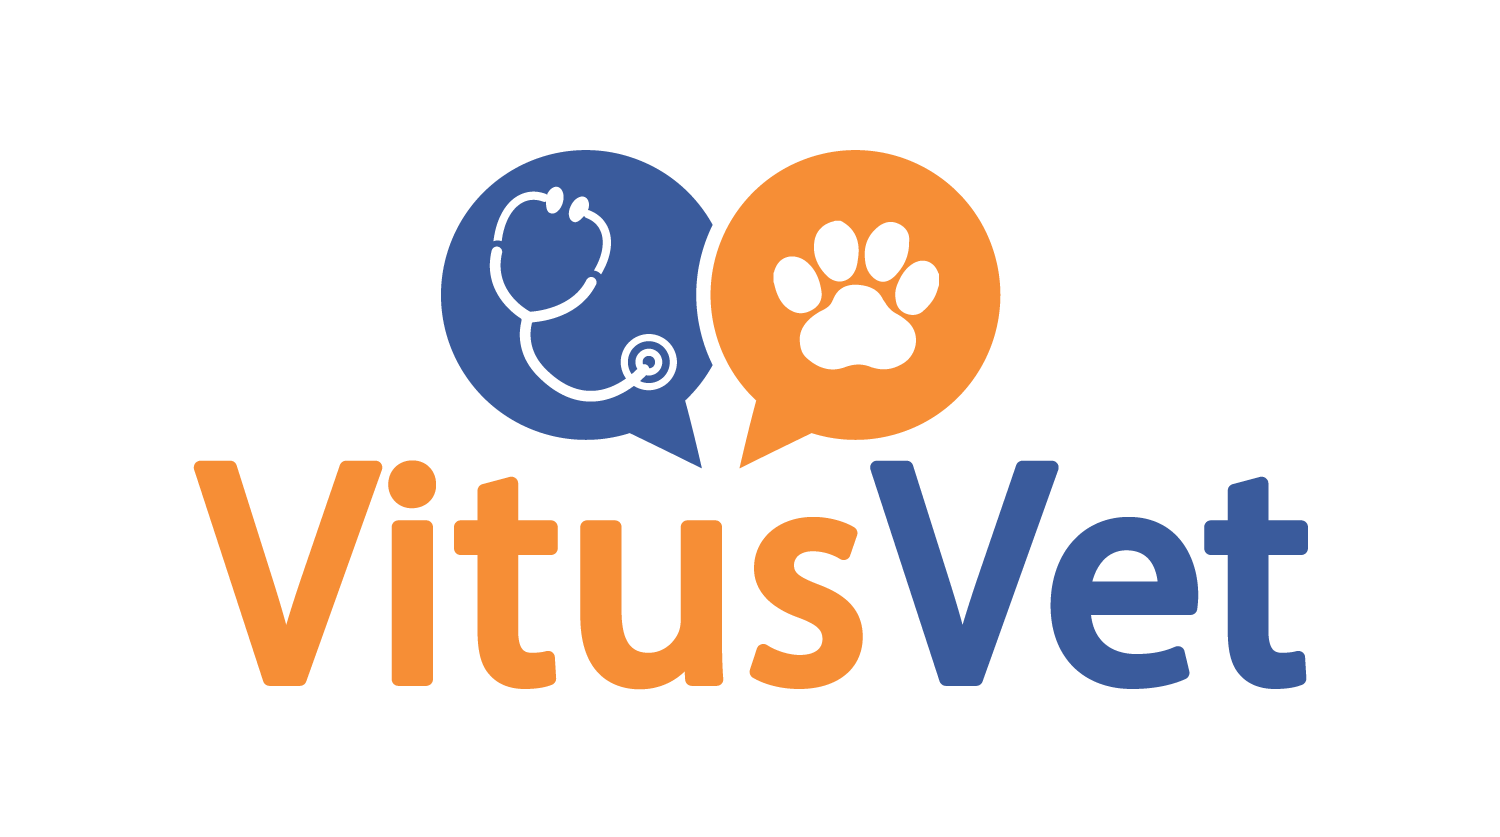 VitusVet – The Best Pet Health Care App